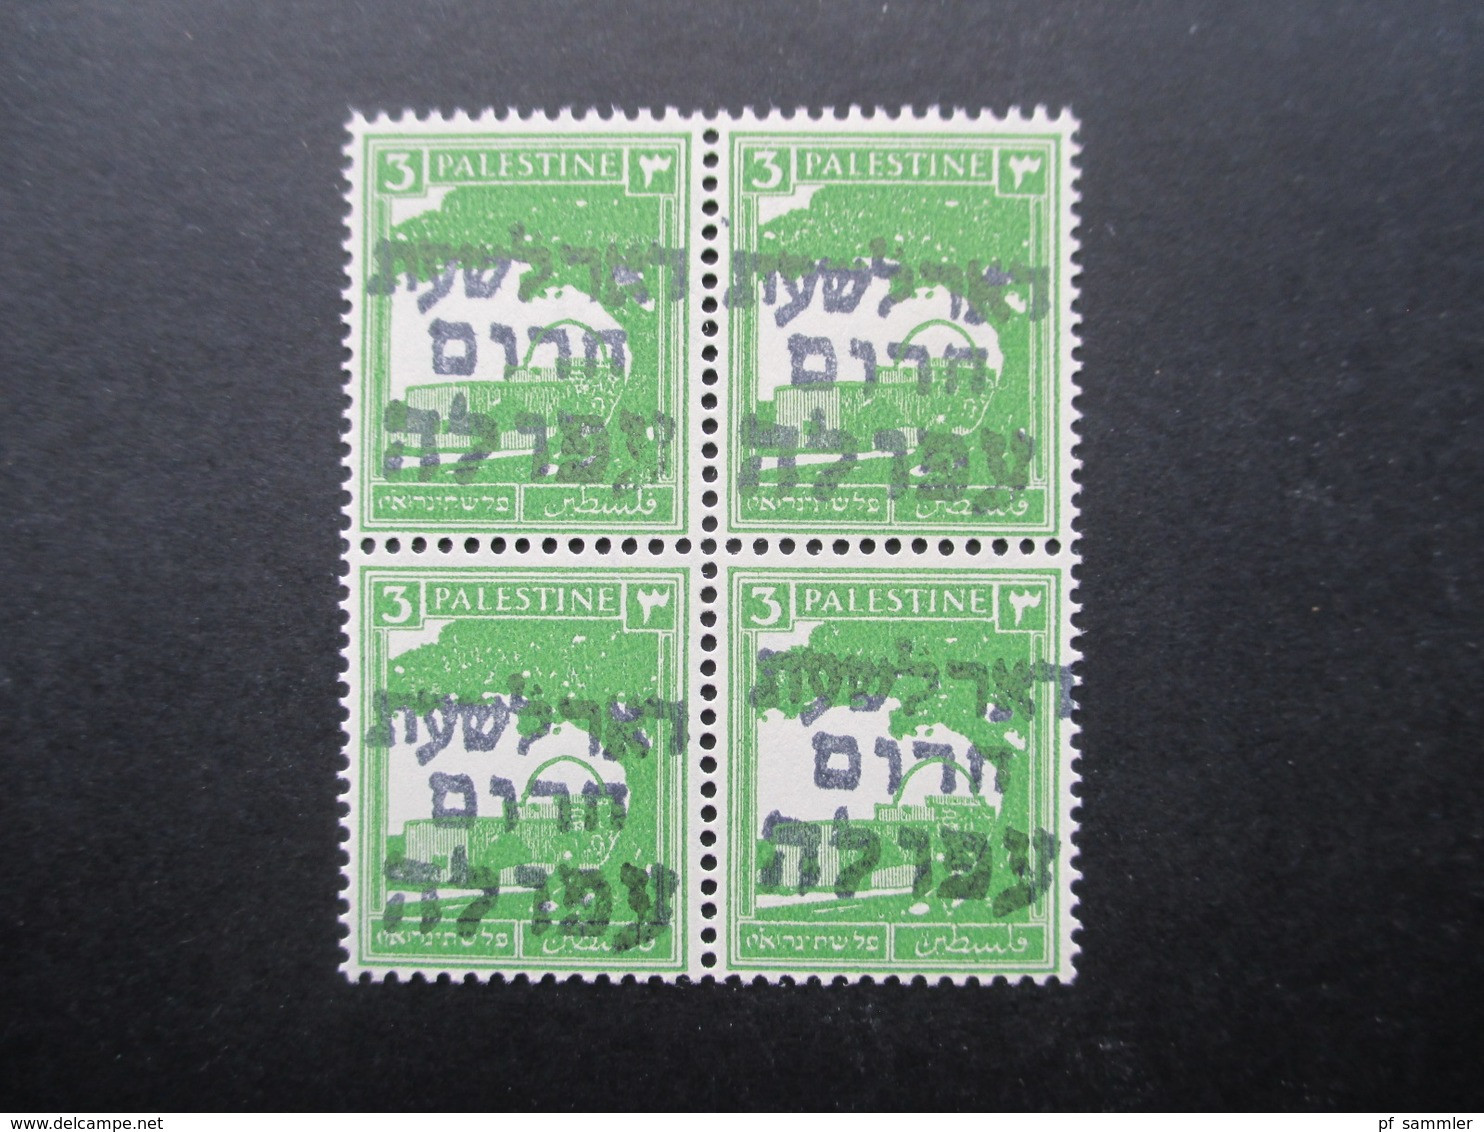 Palestina / Israel 1948 Interimspost ** / Postfrischer 4er Block Aufdruck Afula Emergency Post / Emergency Mail - Palestina